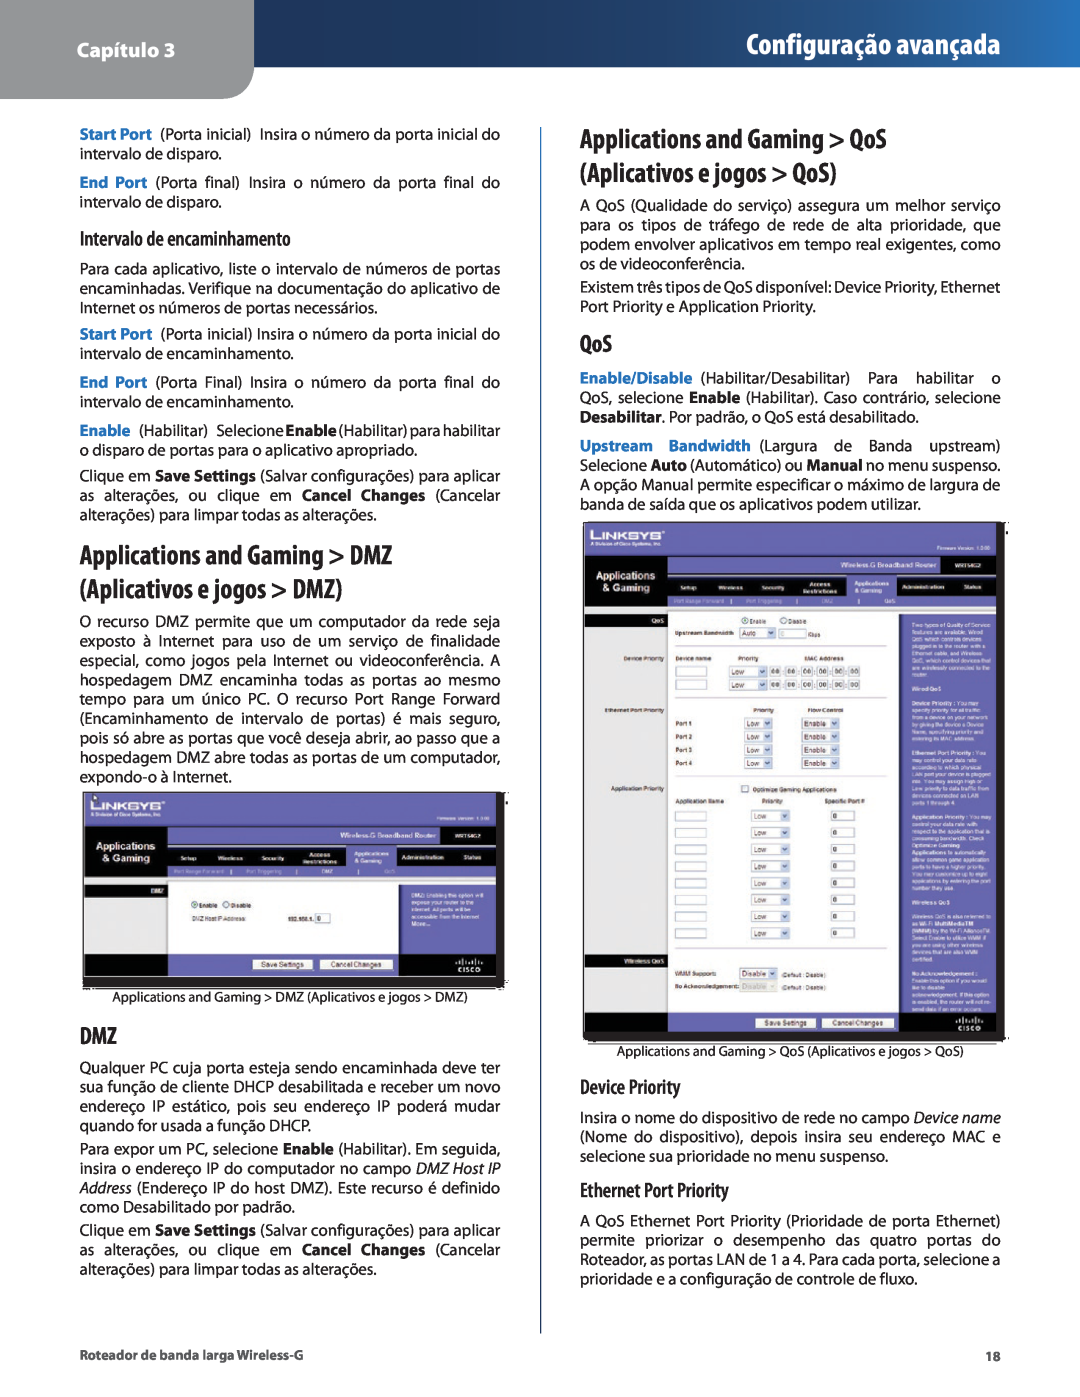 Cisco Systems WRT54G2 manual Intervalo de encaminhamento, Applications and Gaming DMZ Aplicativos e jogos DMZ, Capítulo 